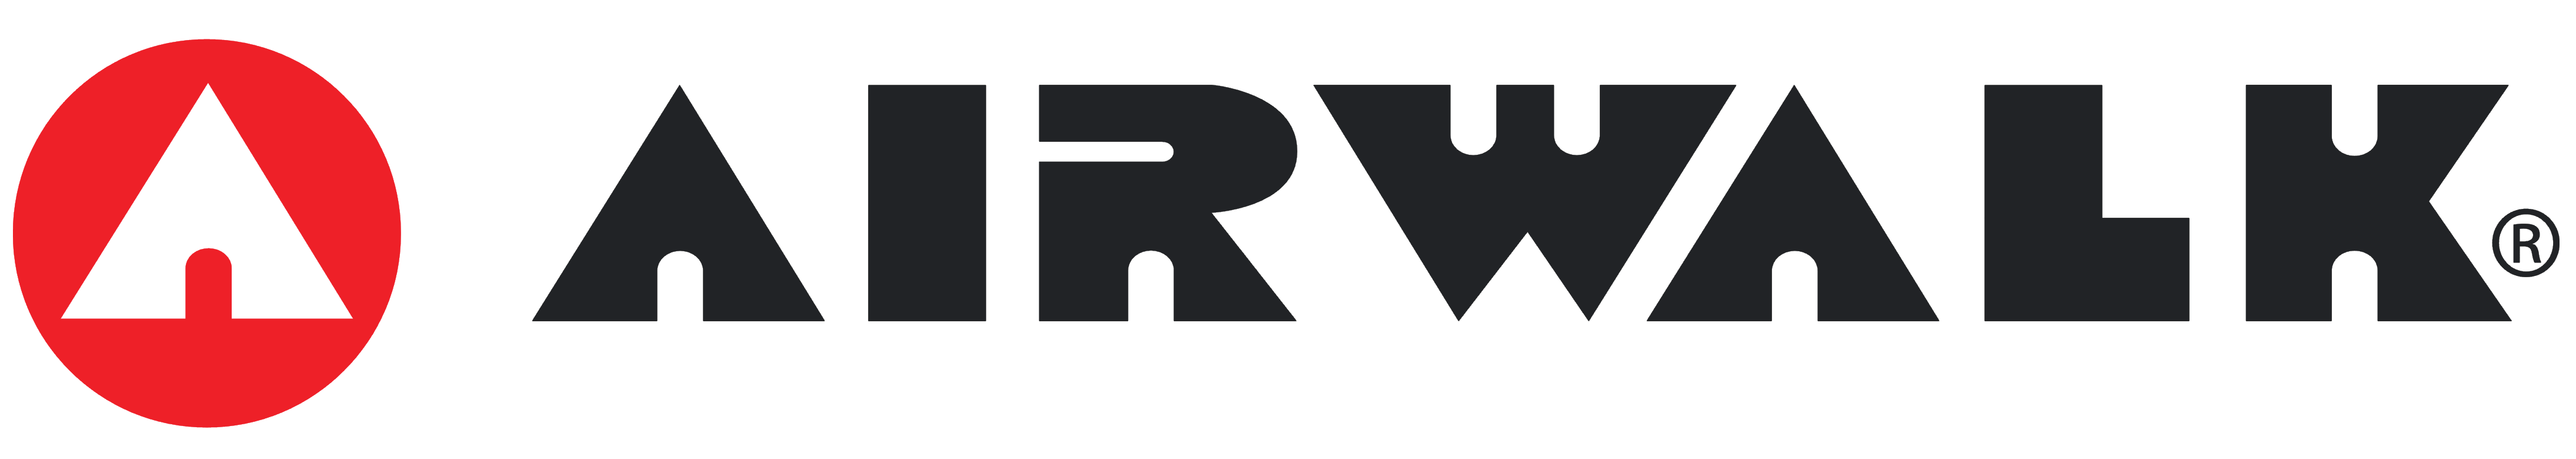 Airwalk logo, logotype